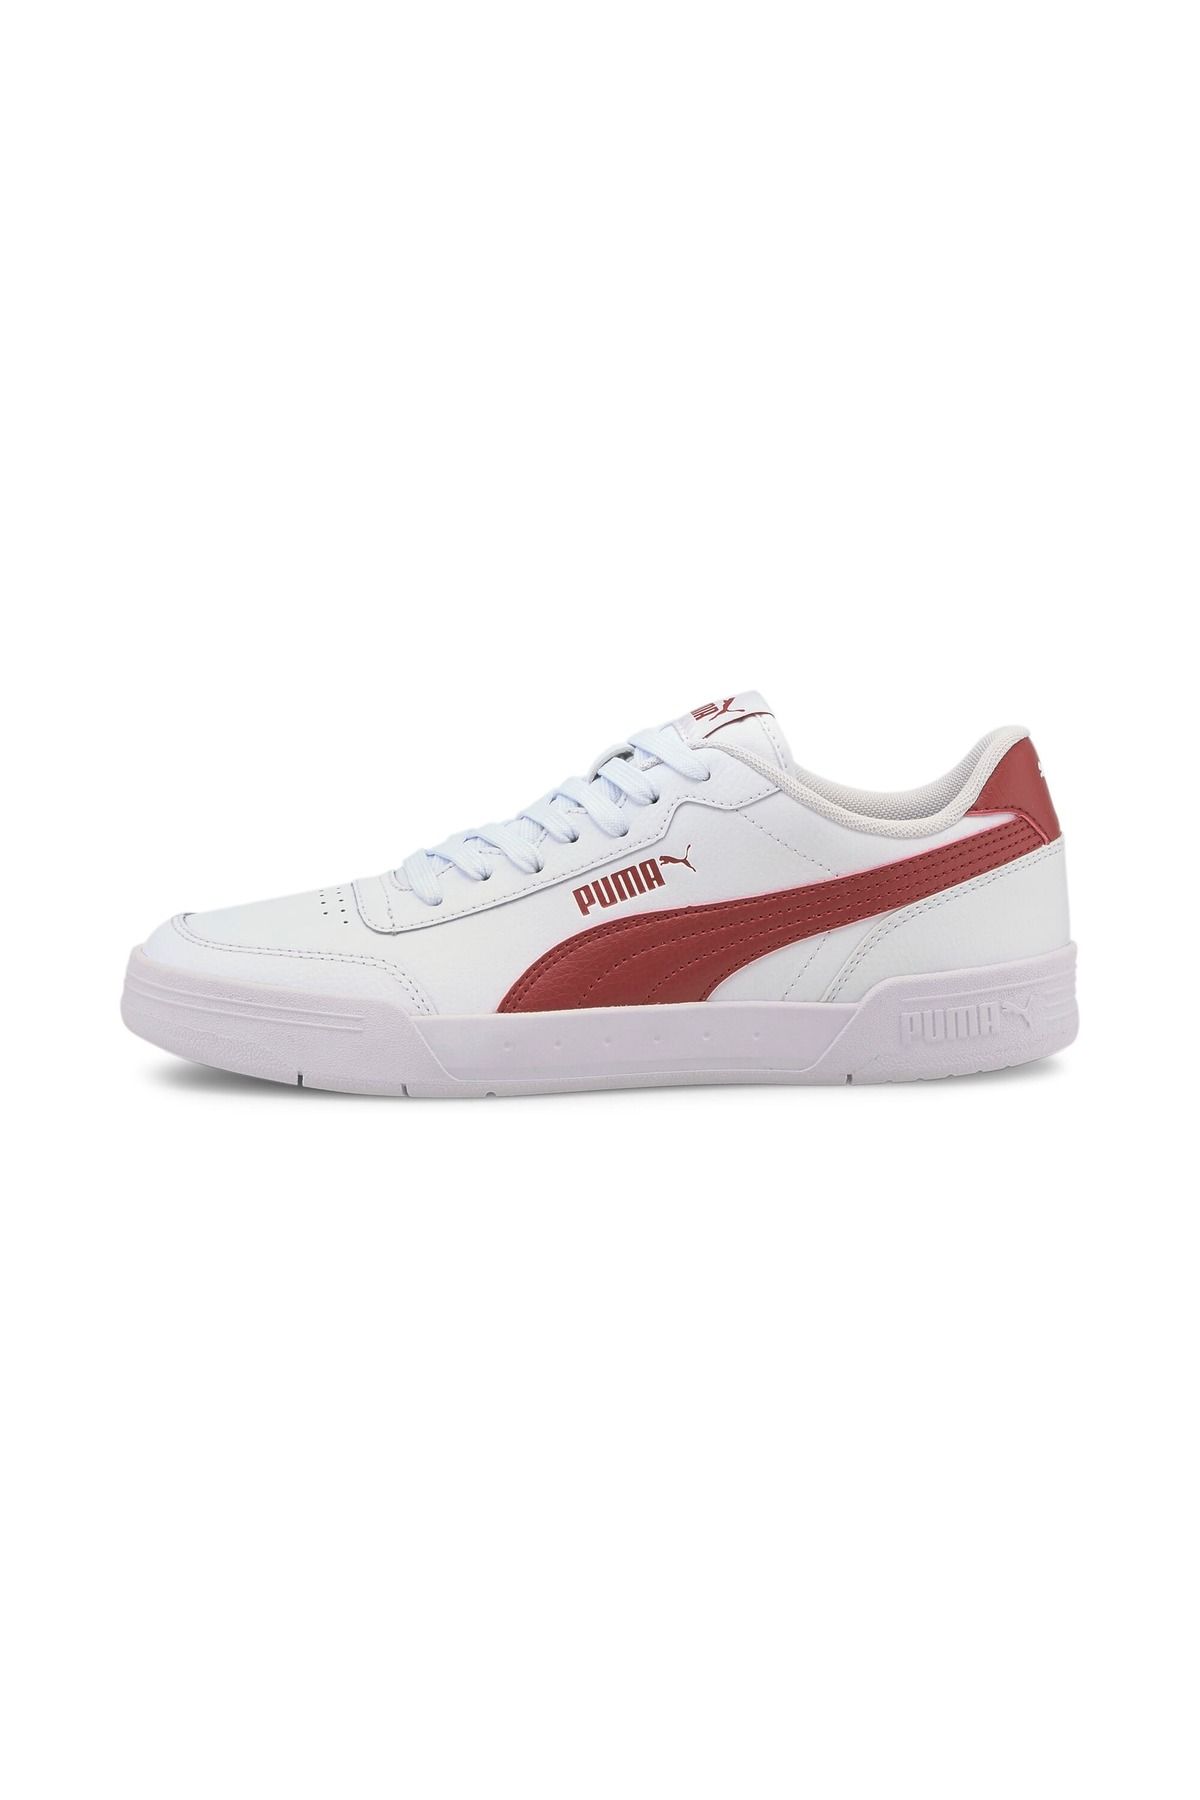 Puma Caracal Dahlia Erkek Beyaz Spor Ayakkabı (369863-18)